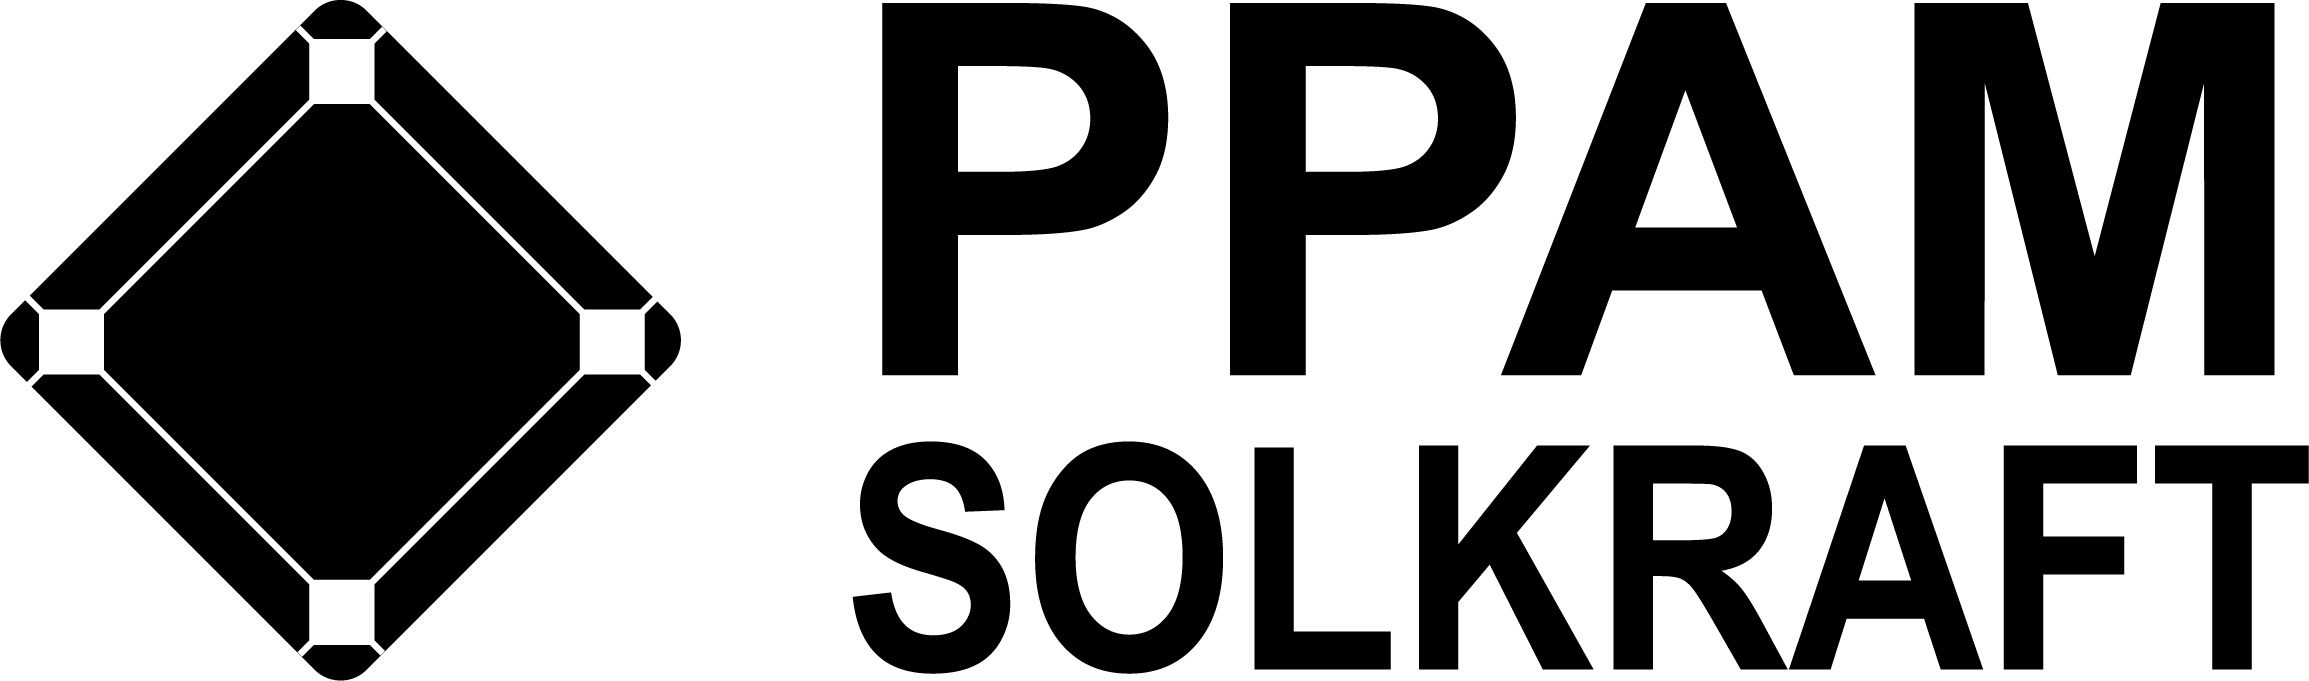 logo ppam solkraft